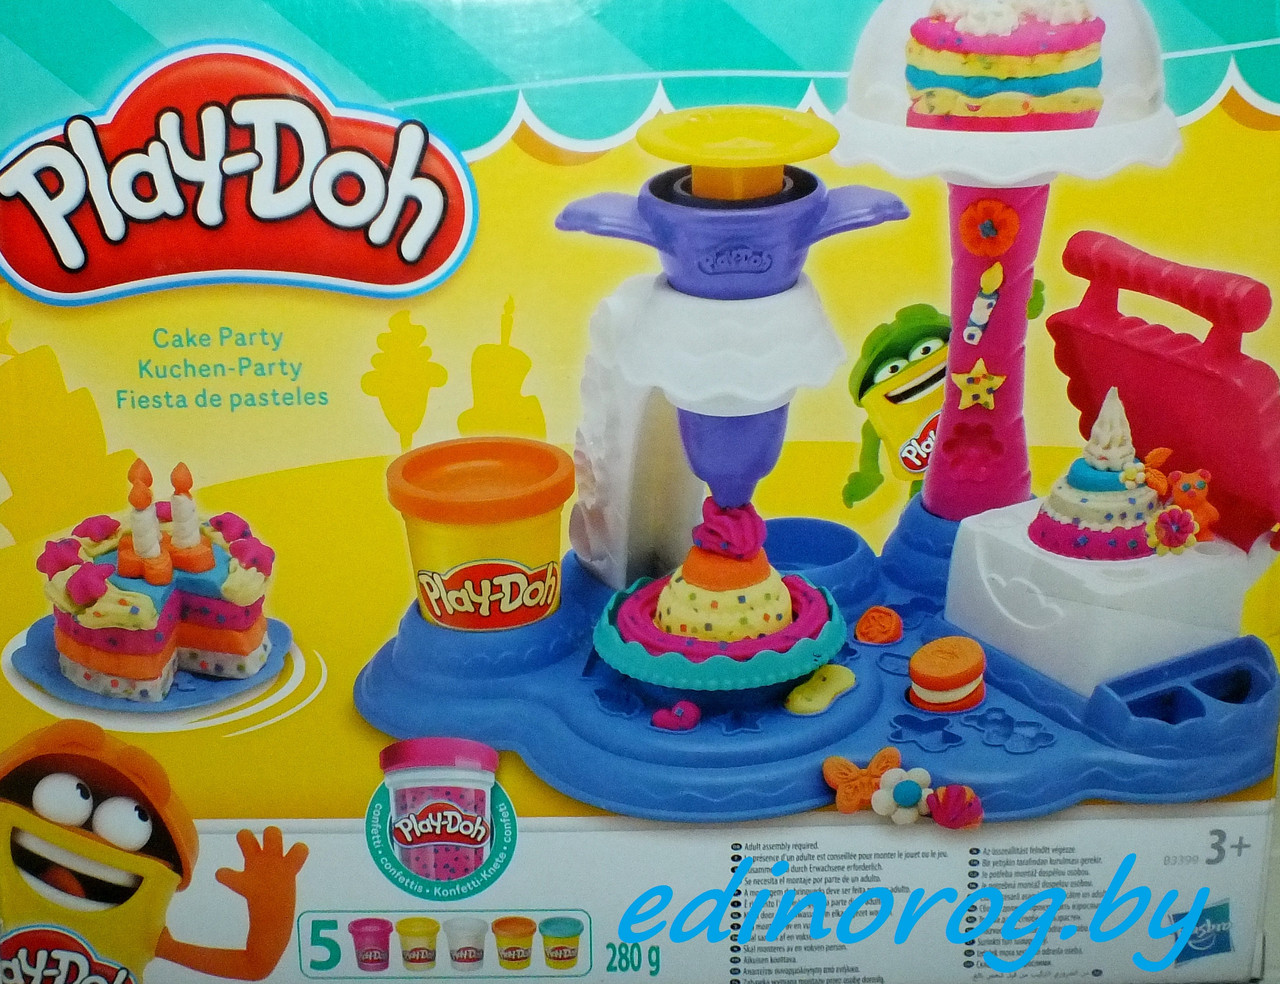 Play-Doh Плей до Hasbro Сладкая вечеринка